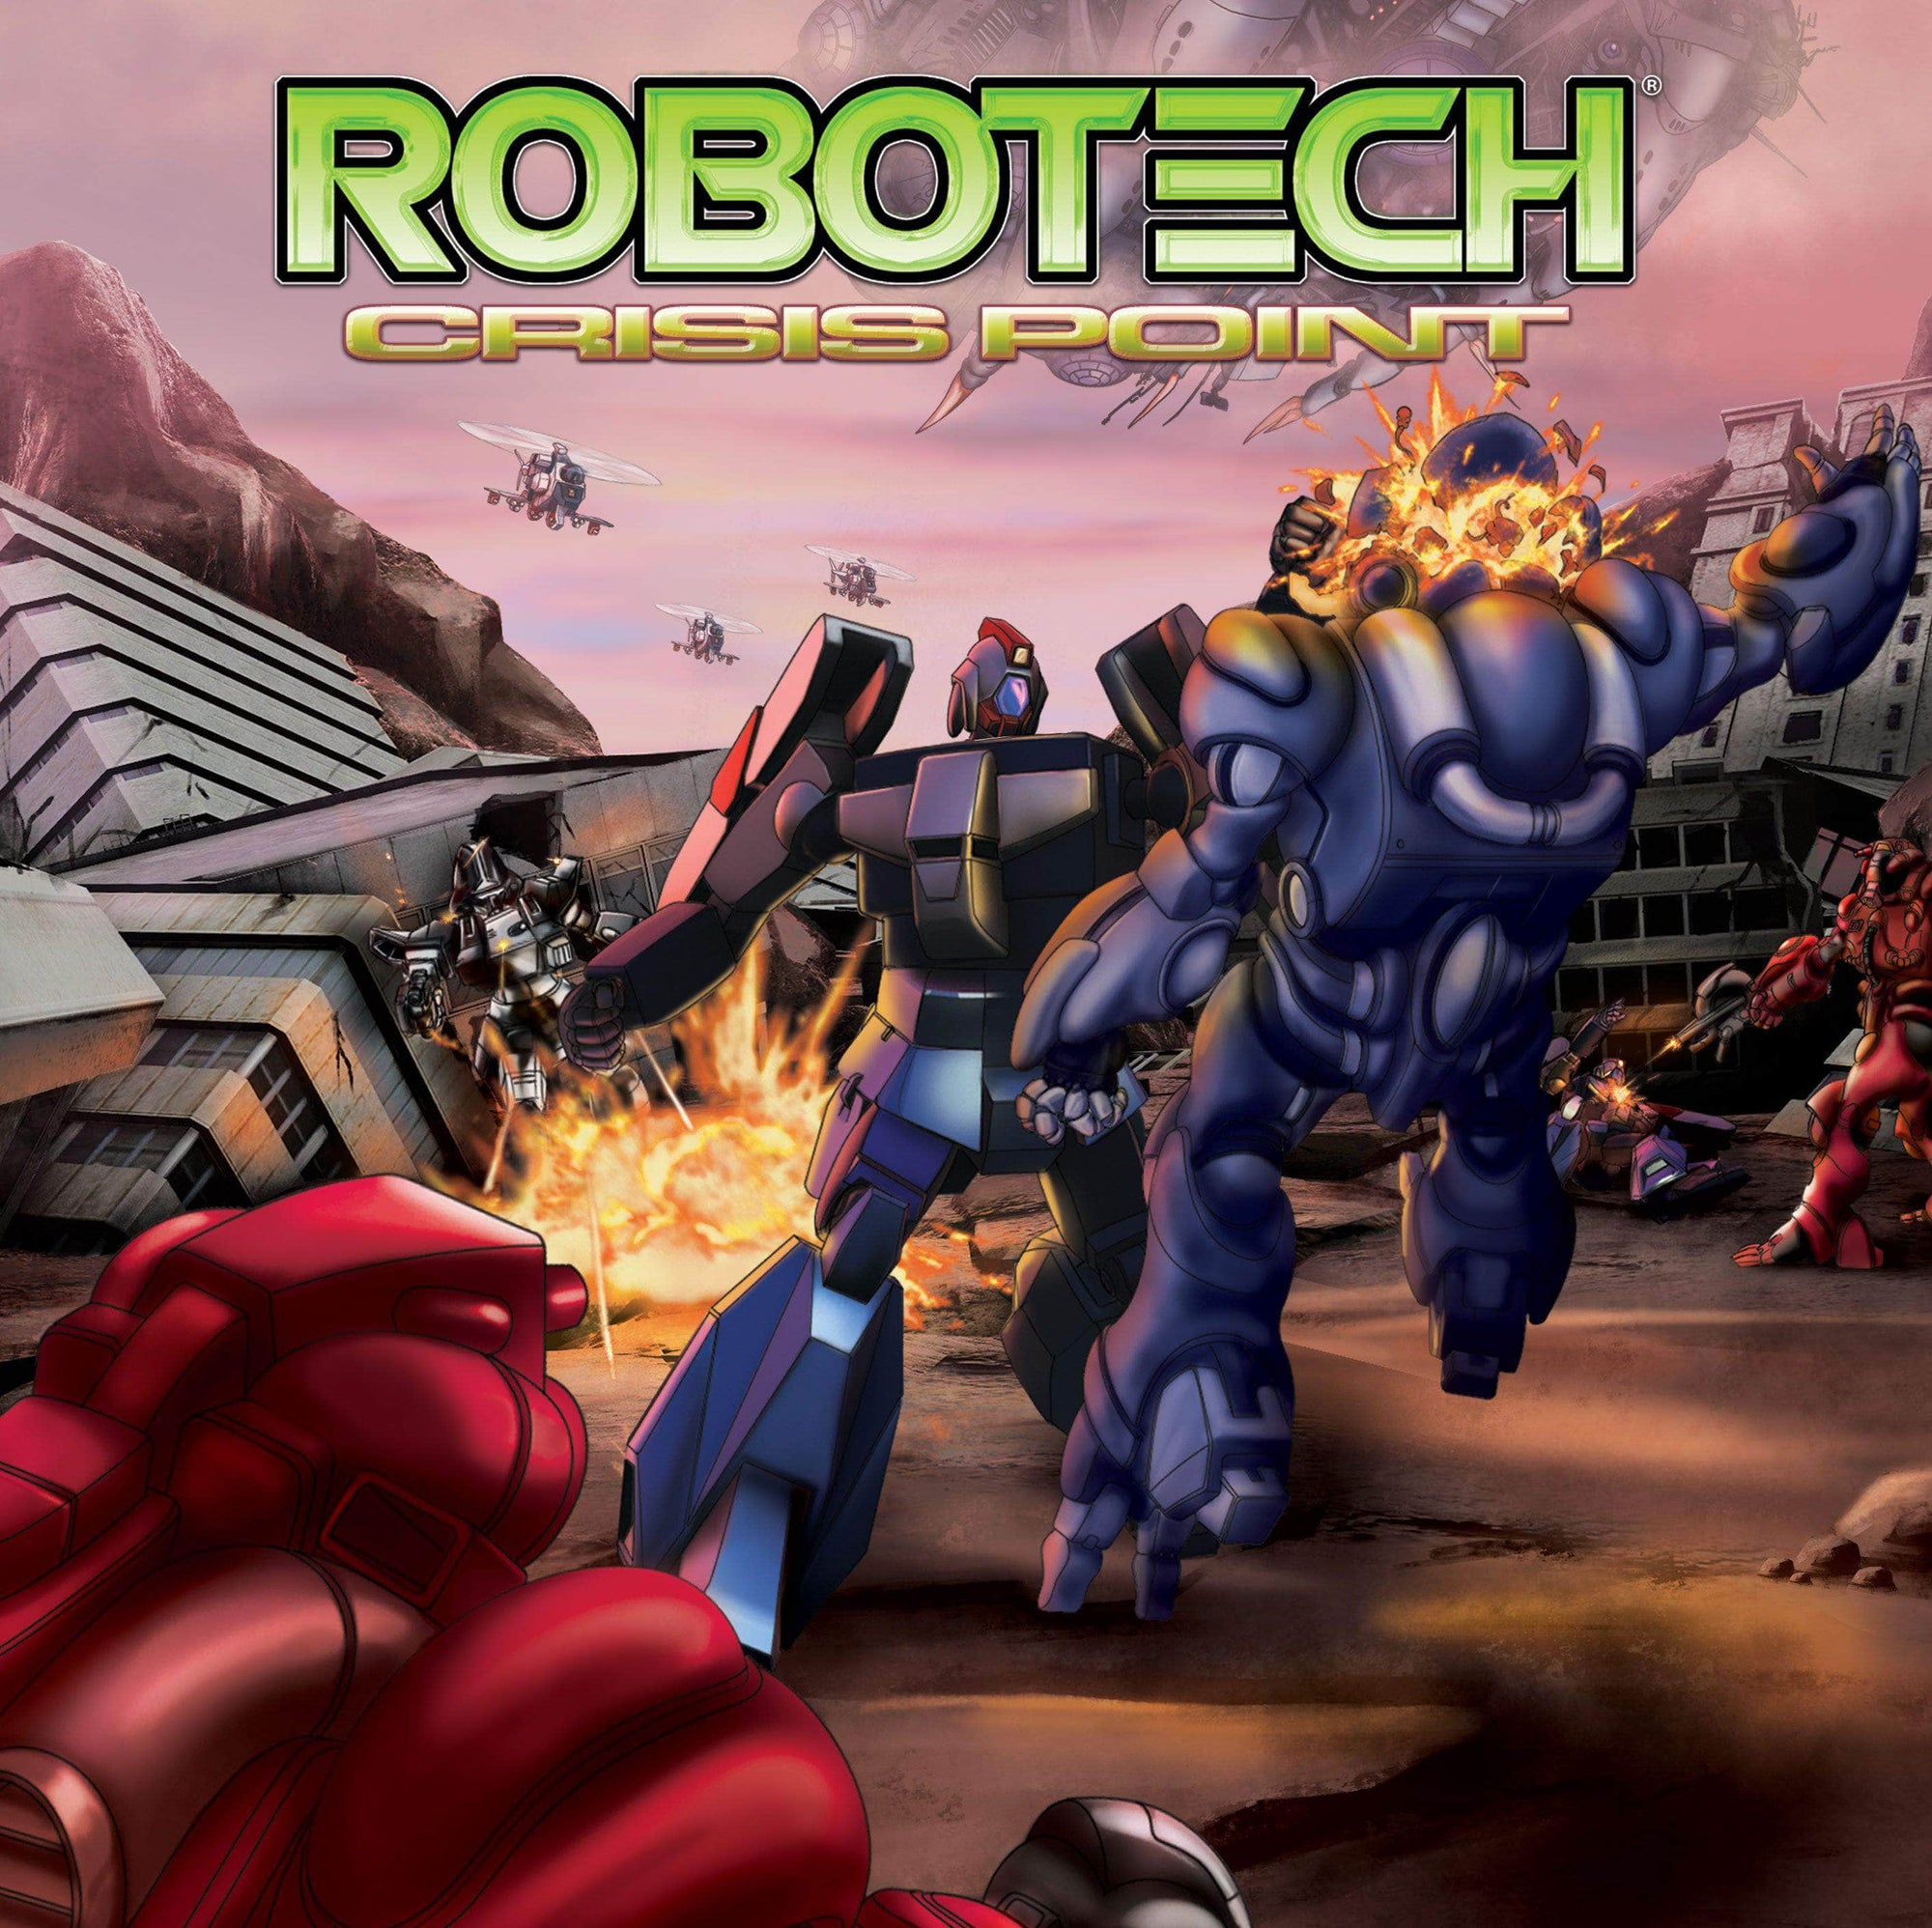 RoboTech: Crisis Point (vähittäiskauppa) vähittäiskaupan lautapeli Solar Flare Games 0860420001724 KS800723A